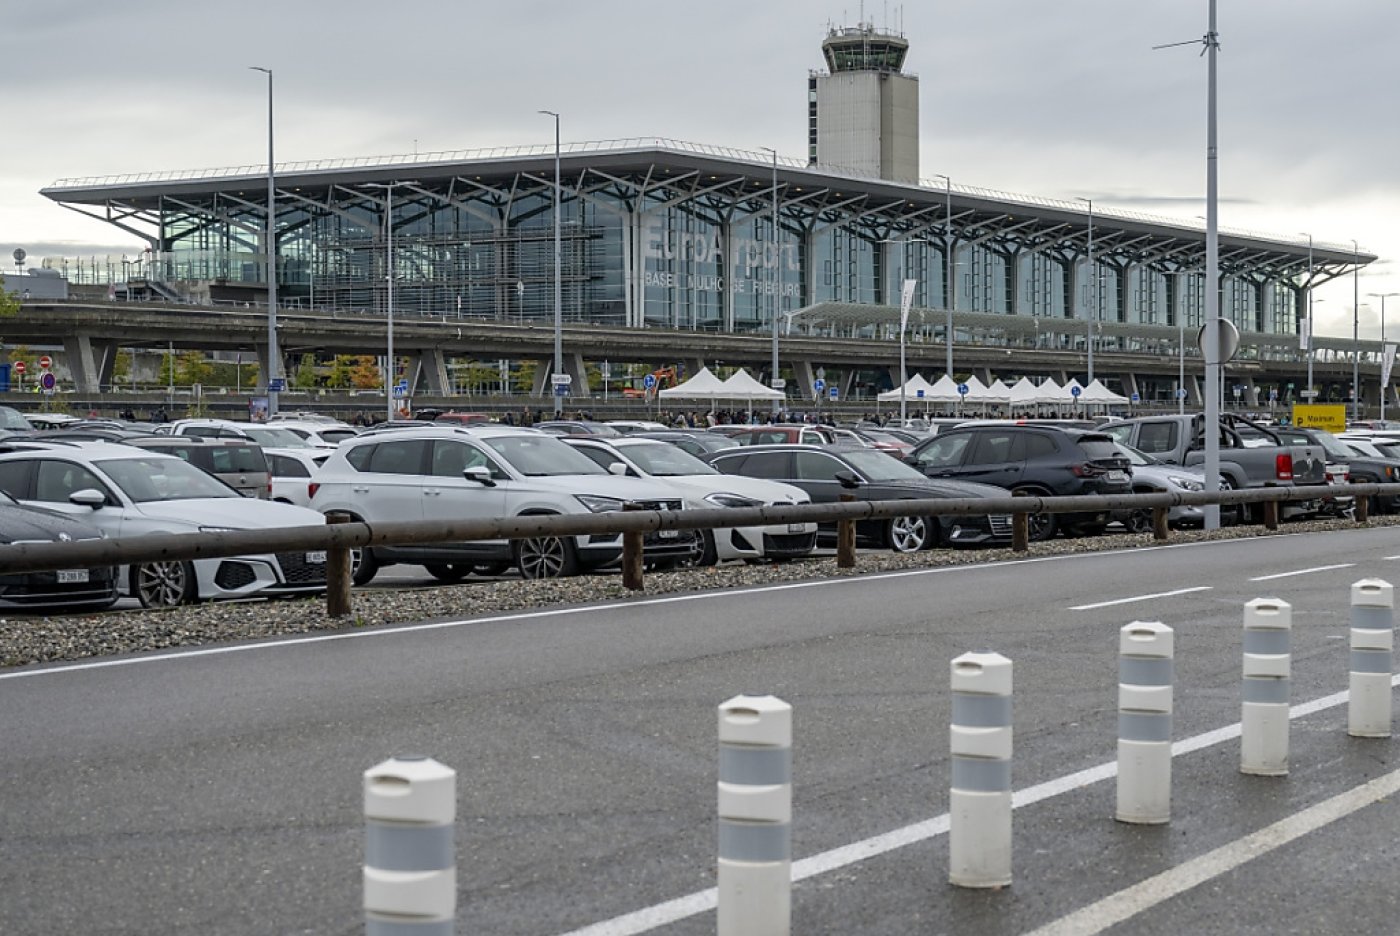 En mars déjà, l'aéroport de Bâle-Mulhouse avait dû être évacué à plusieurs reprises, en raison de fausses alertes à la bombe (archives). KEYSTONE